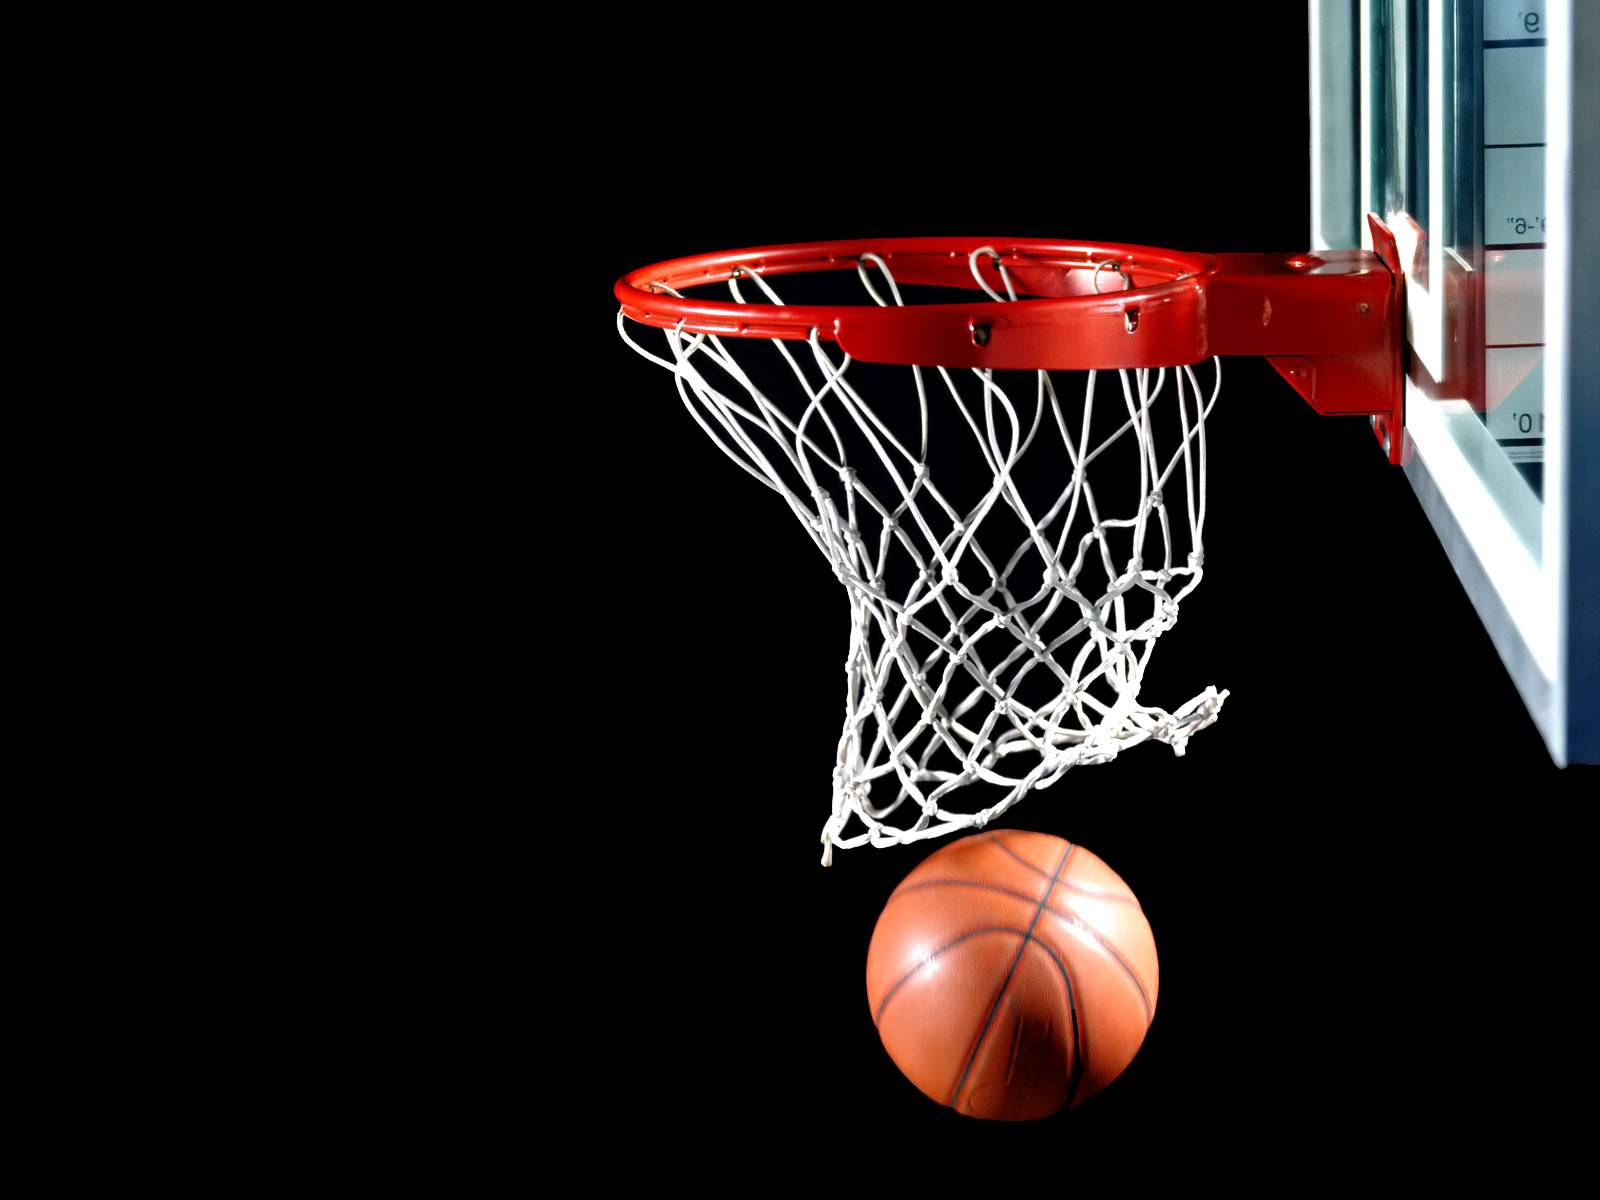 البرنامج الكامل للبطولة العربية للأندية البطلة لكرة السلة